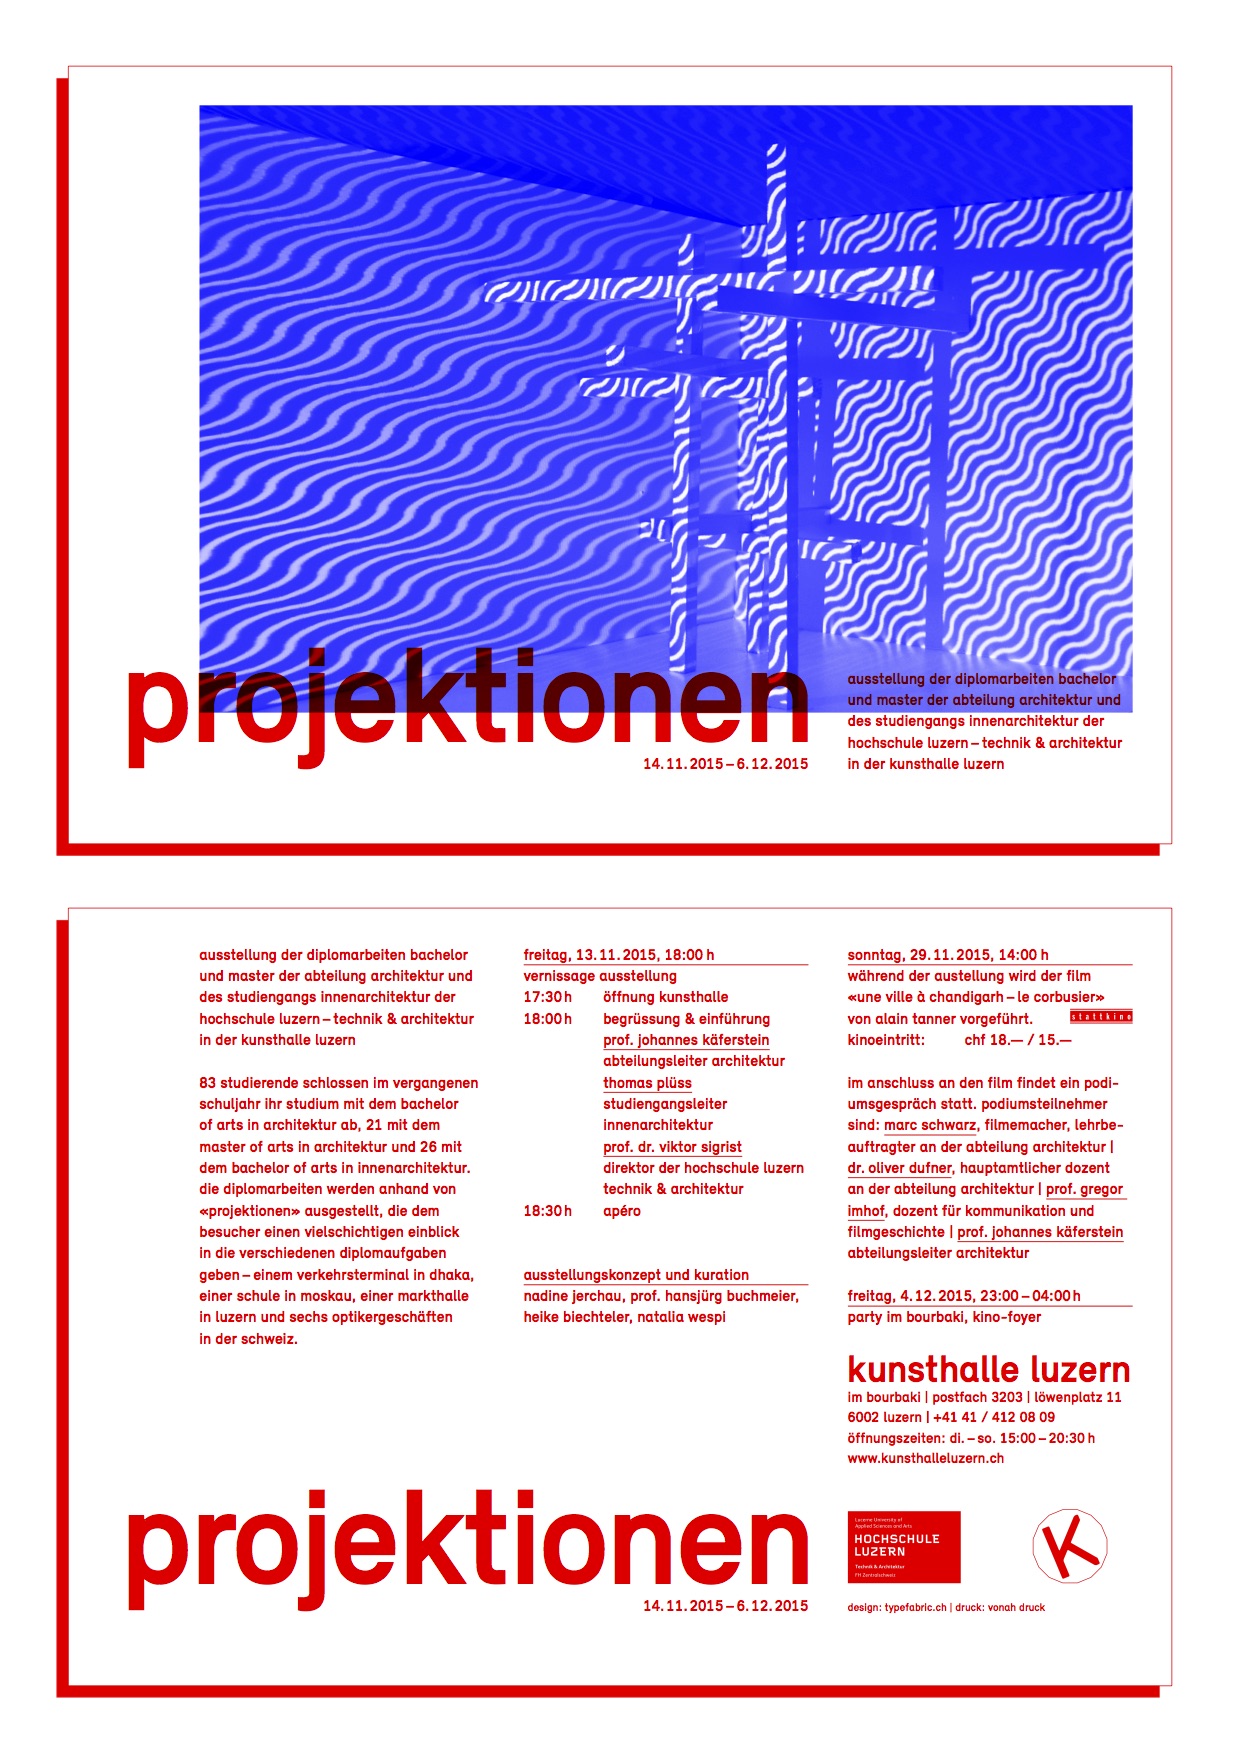 projektionen - Hochschule Luzern – Technik & Architektur